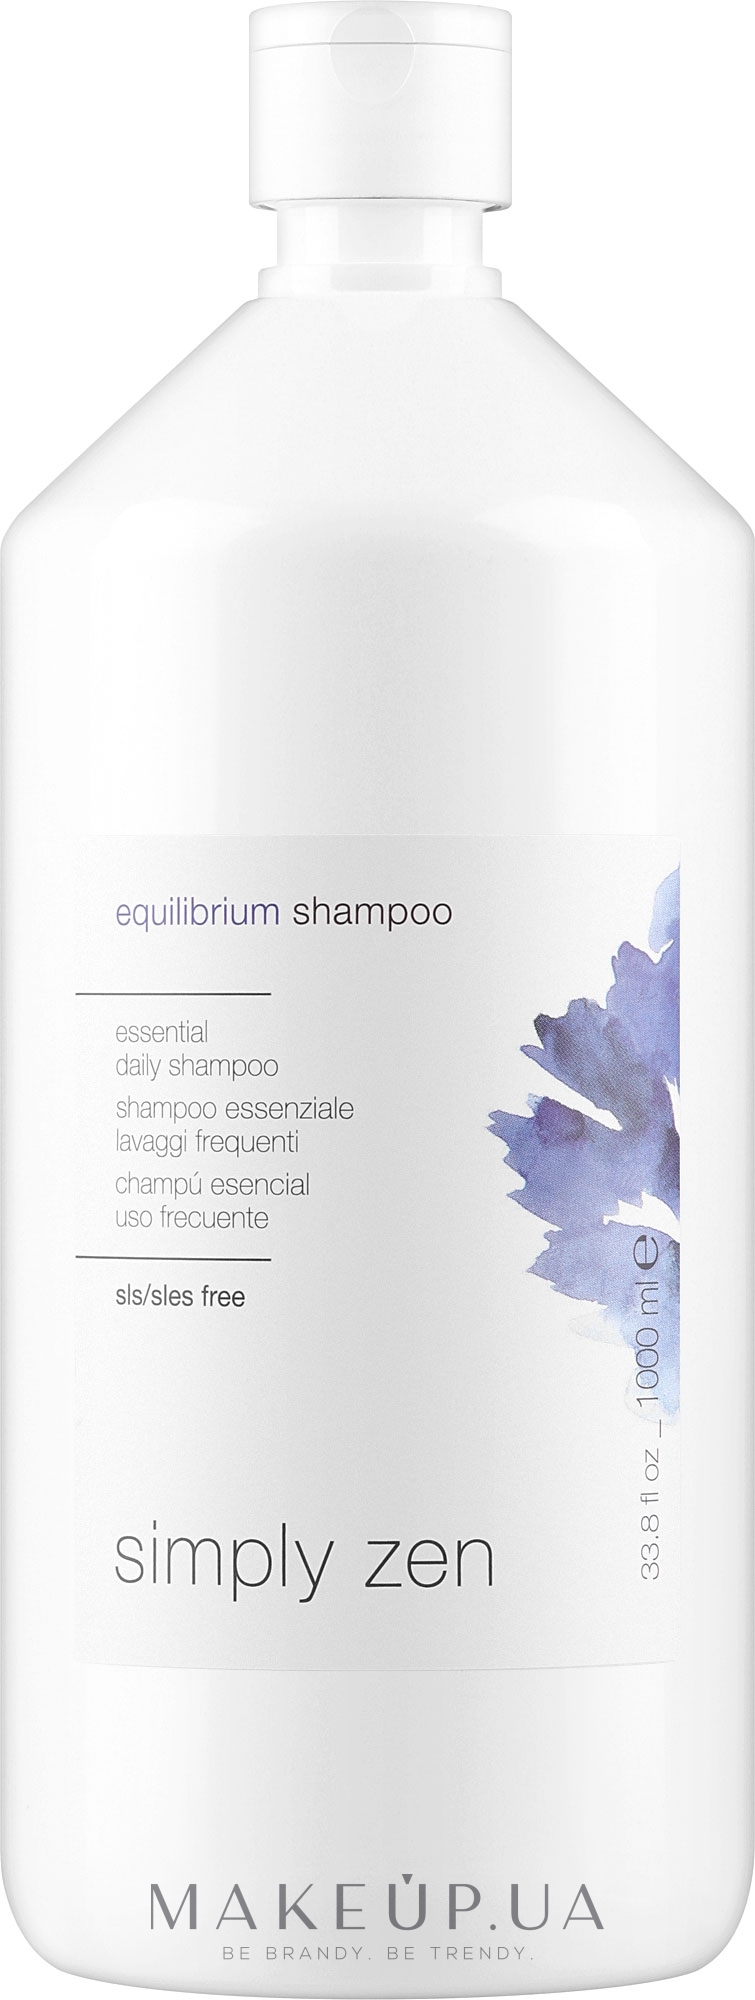 Профилактический шампунь для волос - Z. One Concept Simply Zen Equilibrium Shampoo  — фото 1000ml